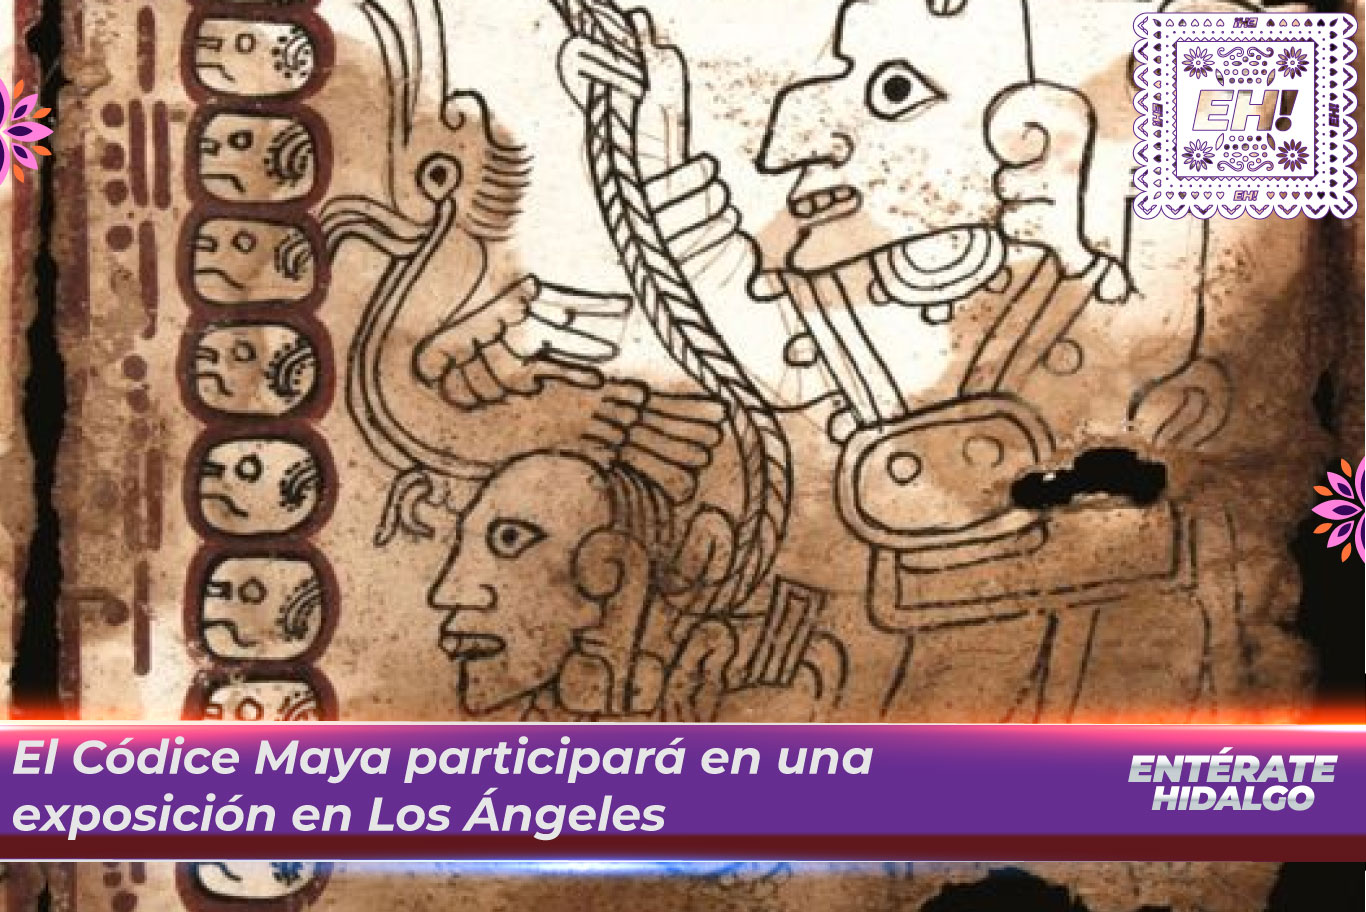 El Códice Maya participará en una exposición en Los Ángeles